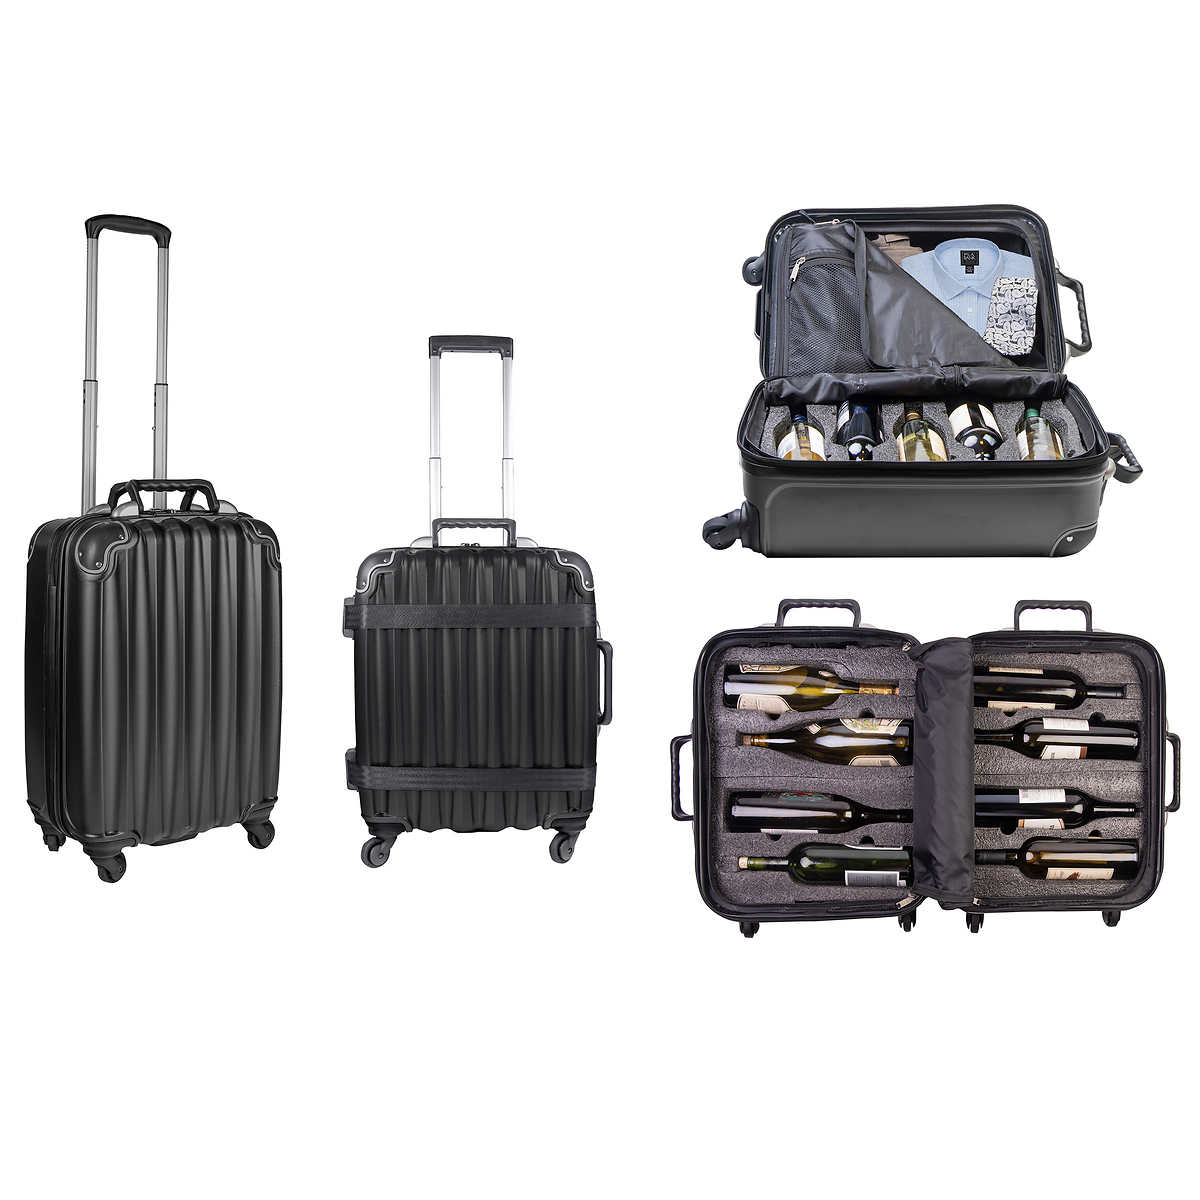 VinGardeValise 2-piece Hardside Wine Carrier Luggage Spinner Set